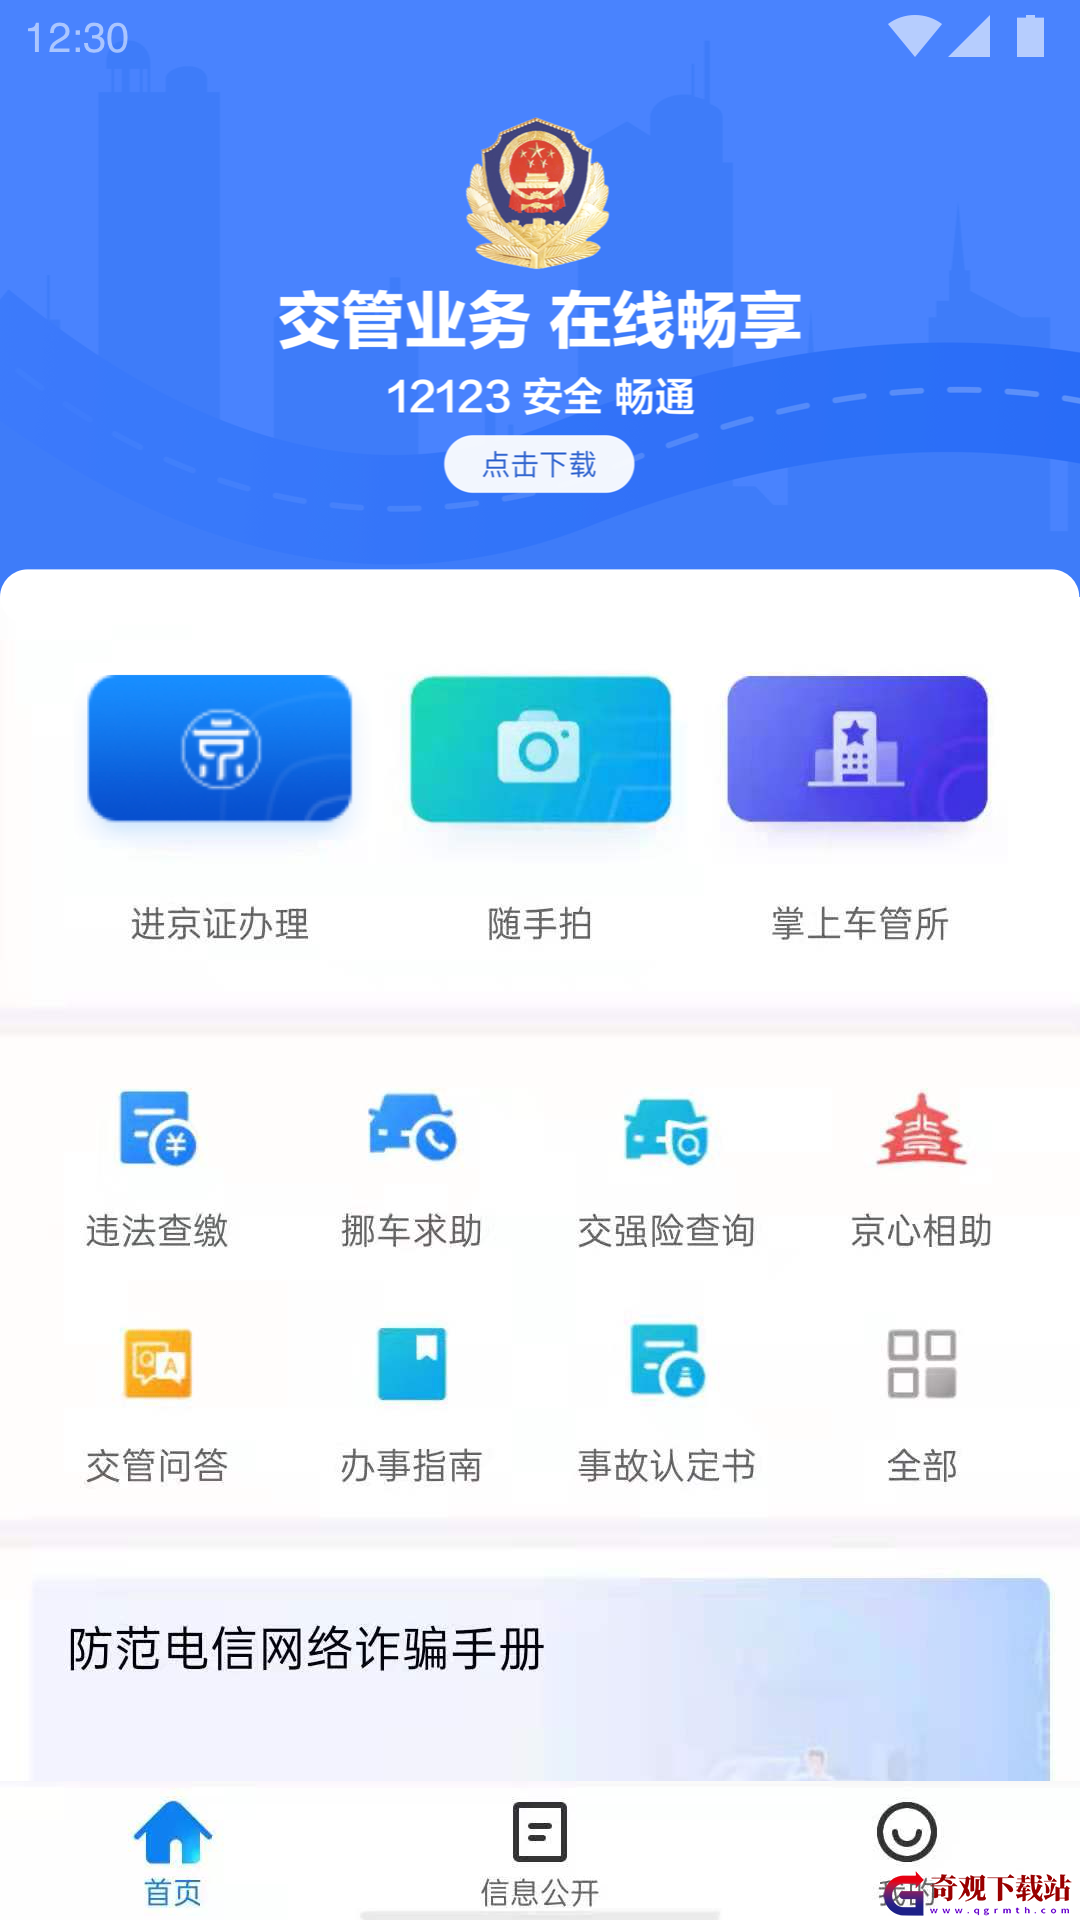 北京交*
app,北京交*
app最新版本